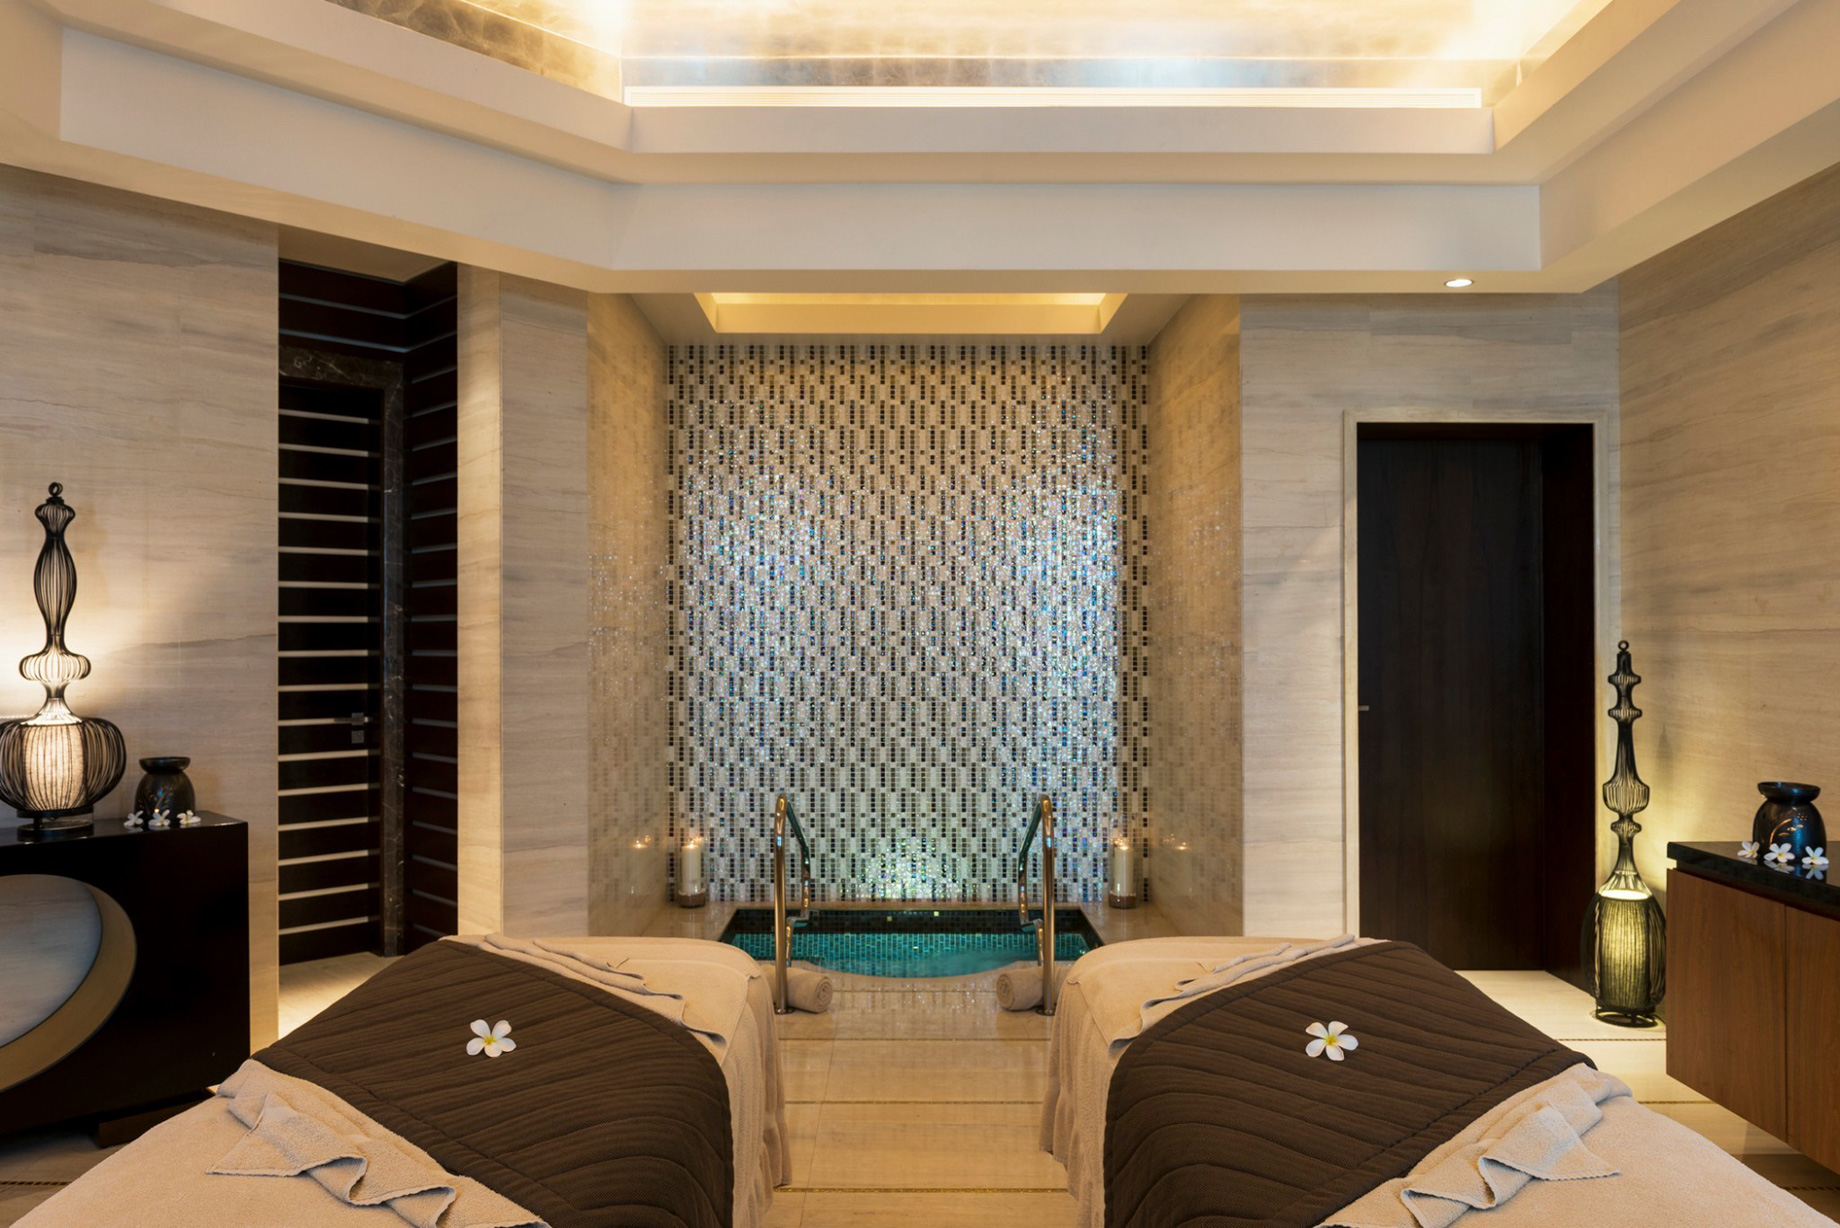 The St. Regis Saadiyat Island Resort – Abu Dhabi, UAE – Iridium Spa Treatment Room Interior